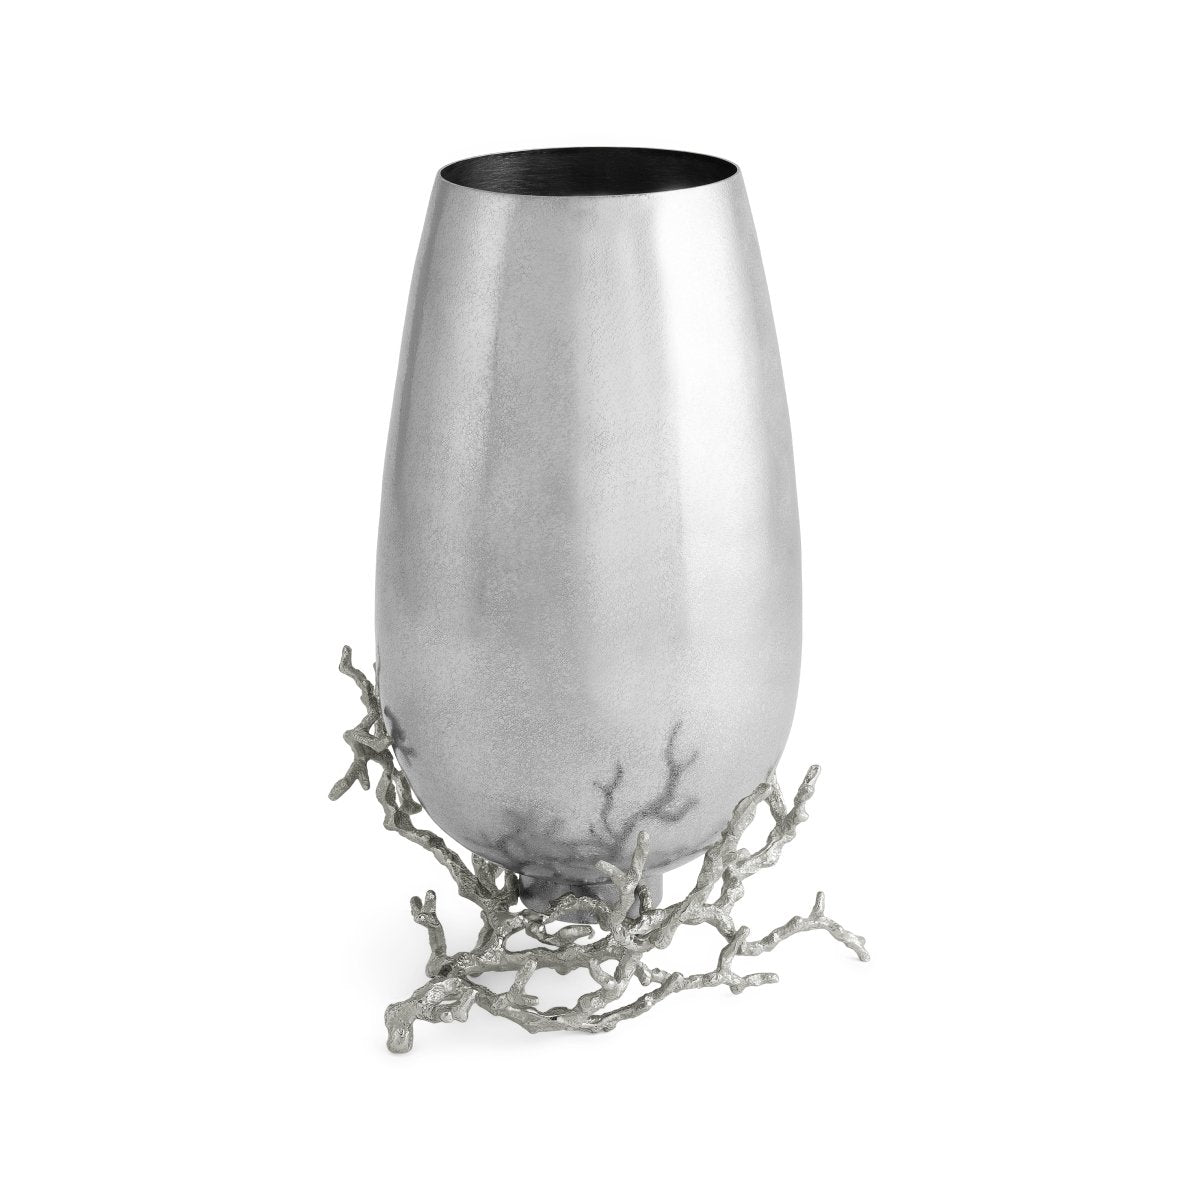 Michael Aram Ocean Reef Vase